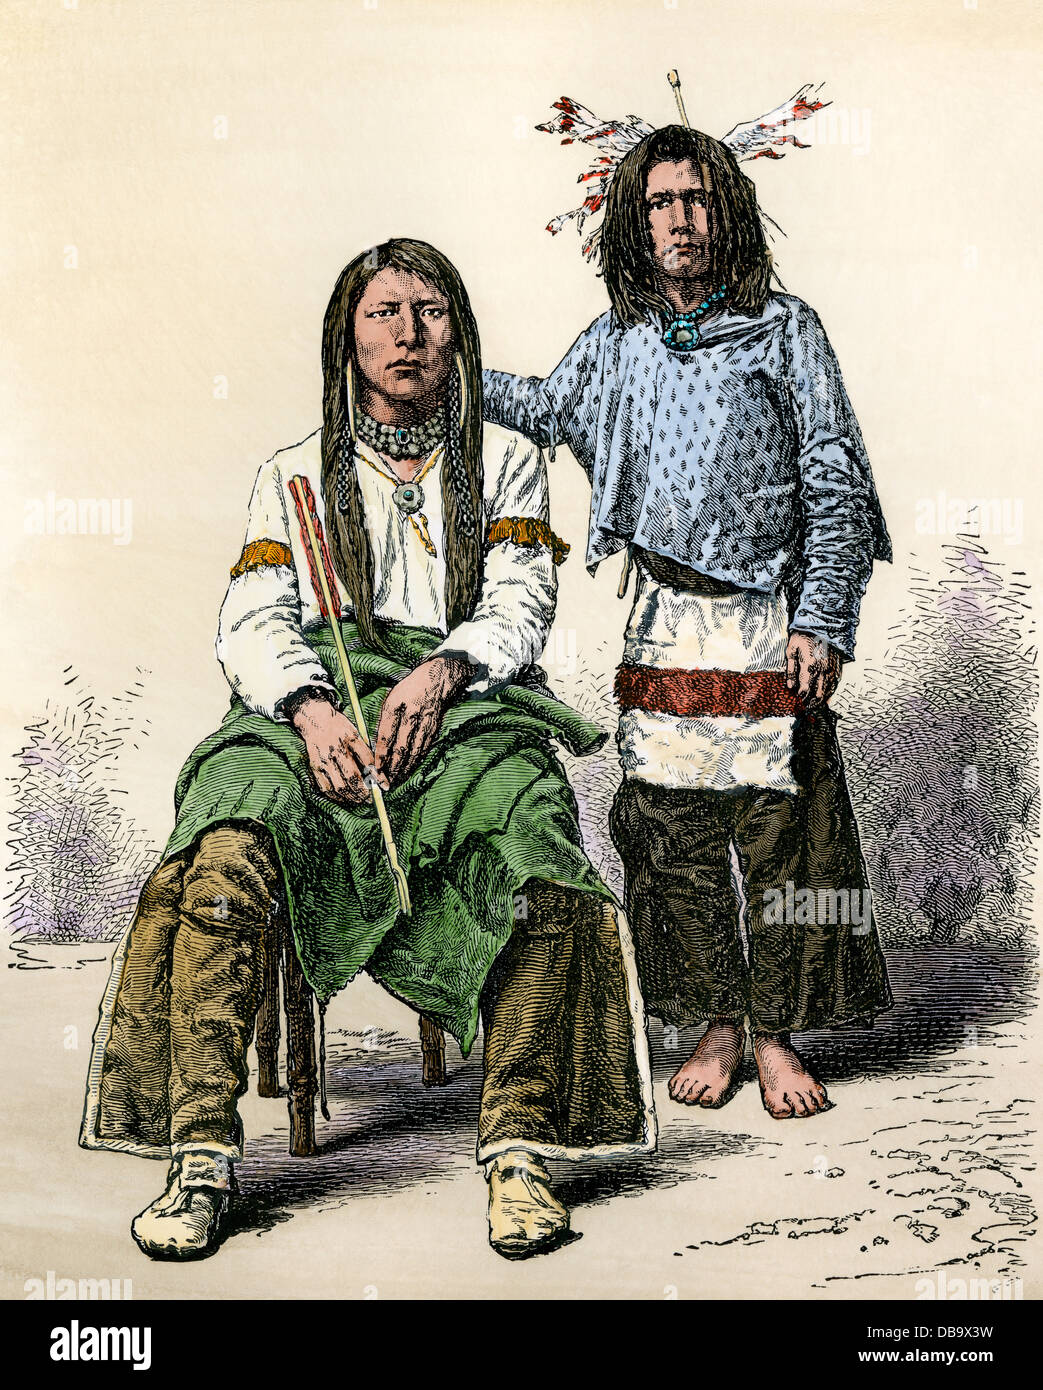 Les hommes de la tribu serpent dans l'Oregon, 1800. À la main, gravure sur bois Banque D'Images